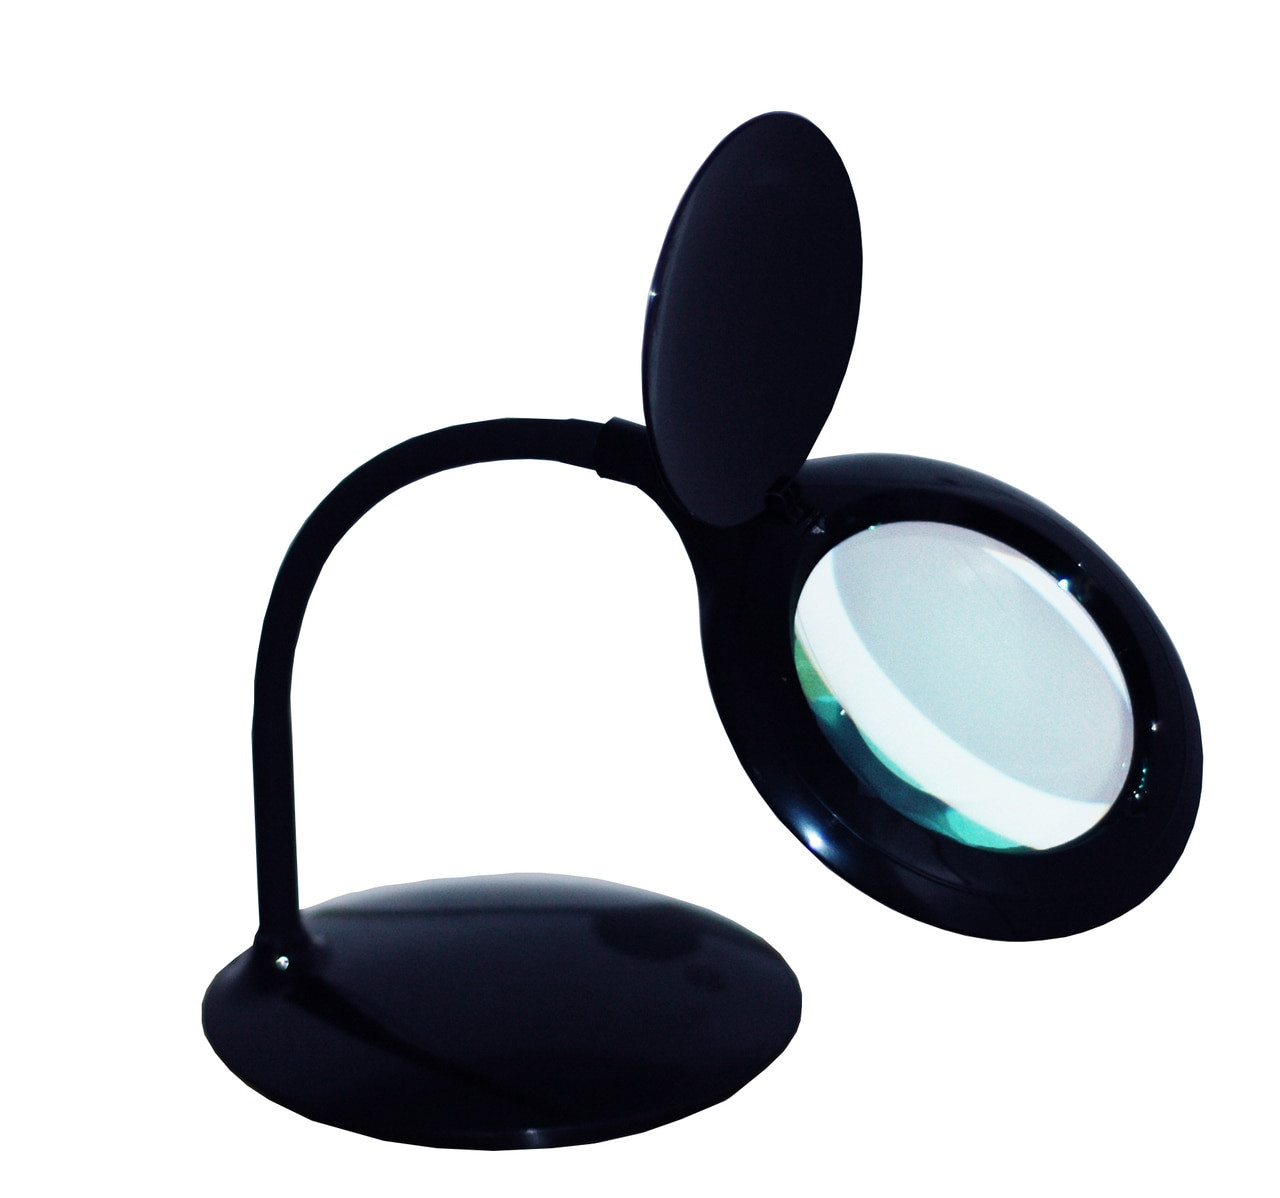 Desk Gooseneck 5 Magnifying Lamp By Tekline Black 80 Led Daylight